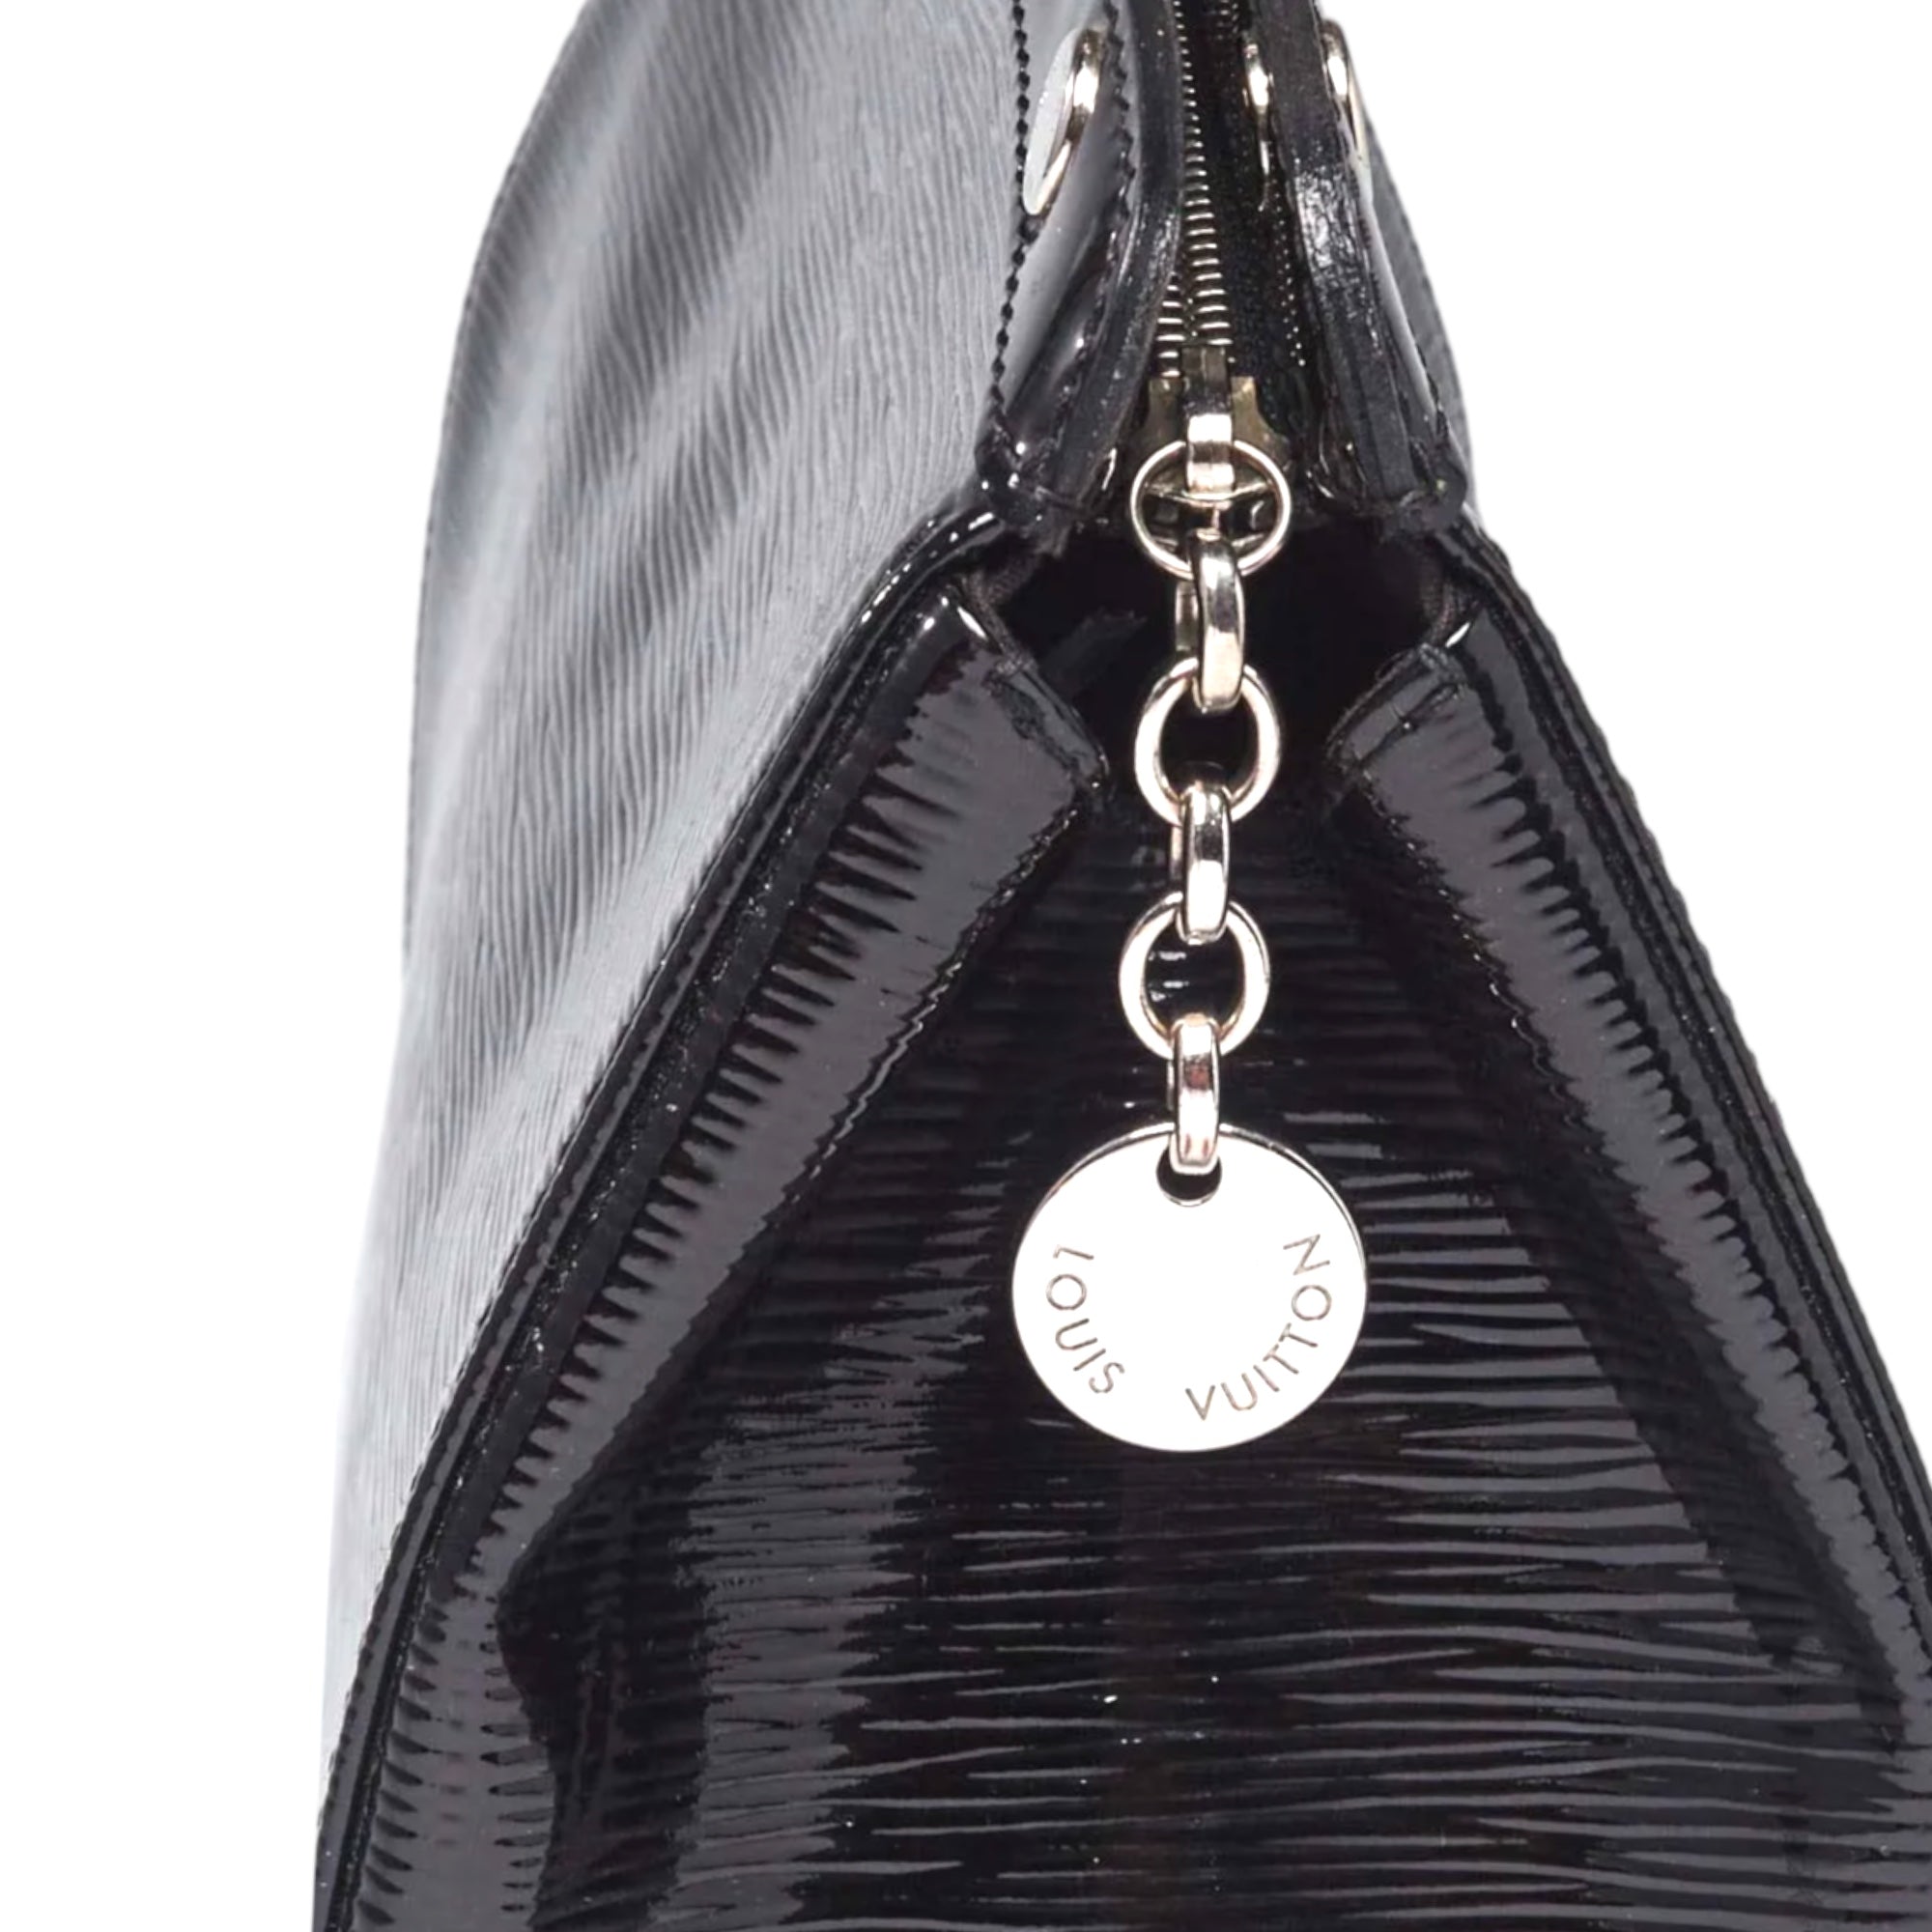 Louis Vuitton Black Epi Leather Brea MM Bag 